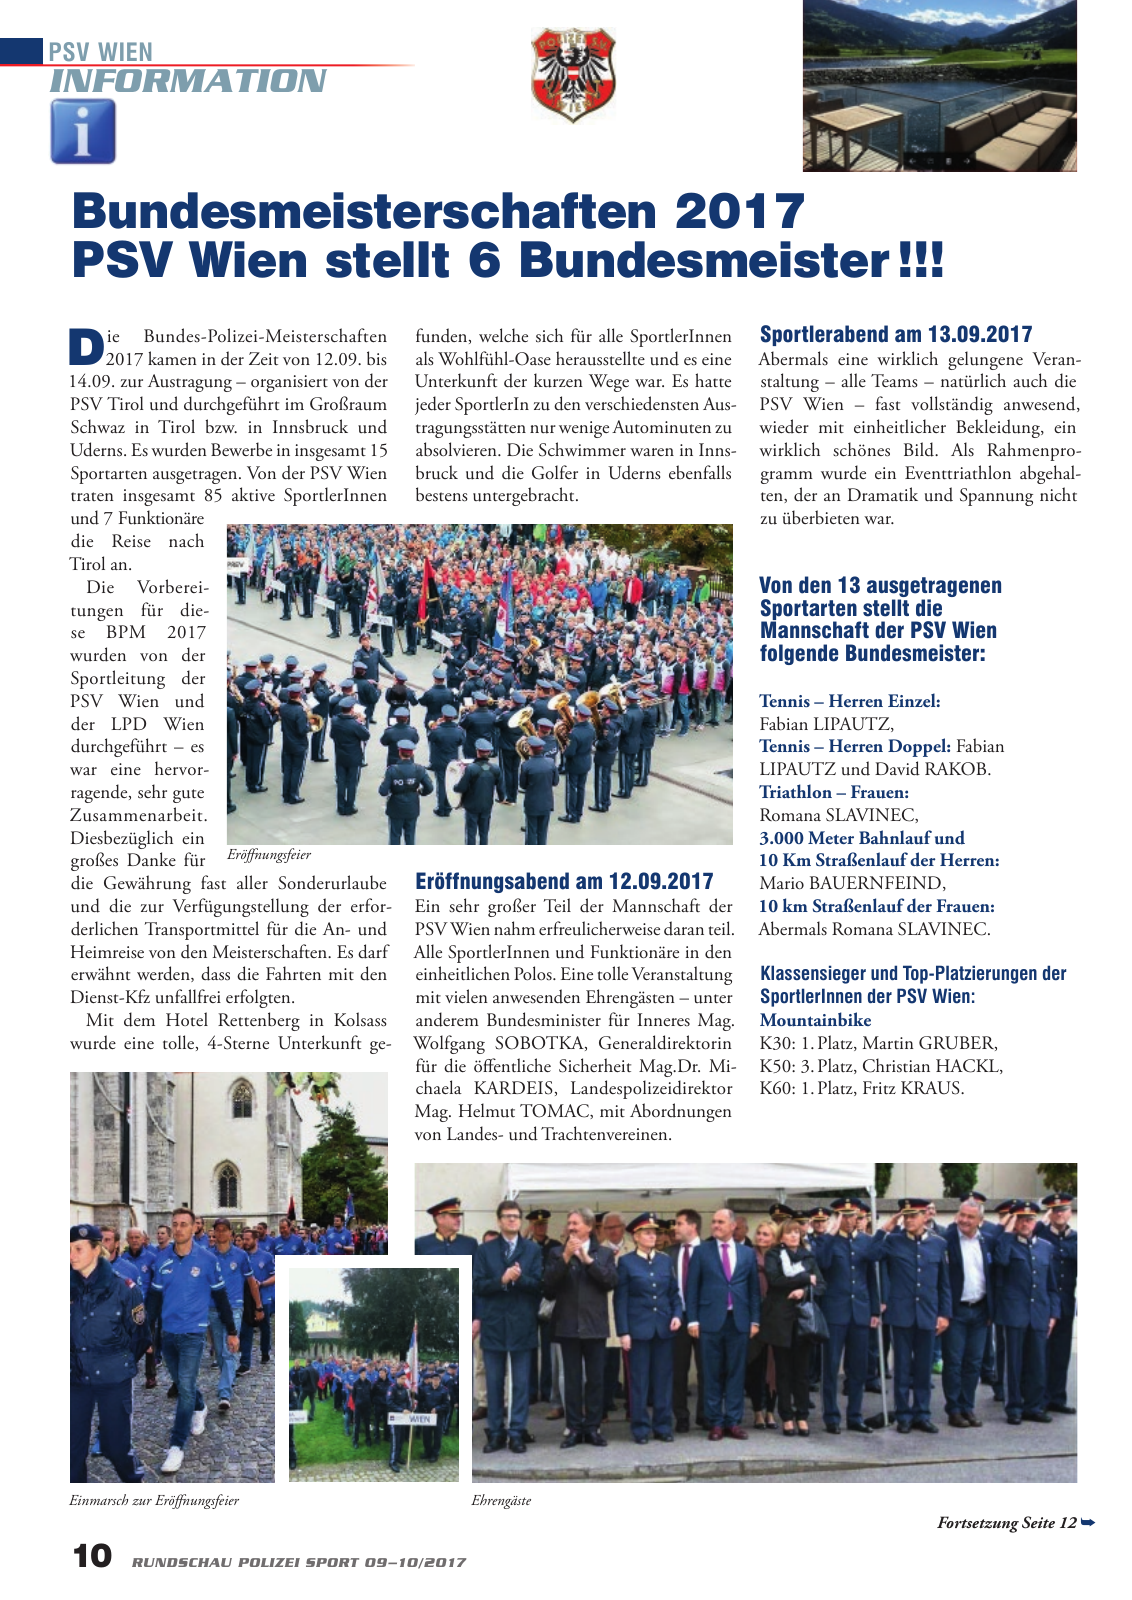 Vorschau Rundschau Polizei Sport 09-10/2017 Seite 10